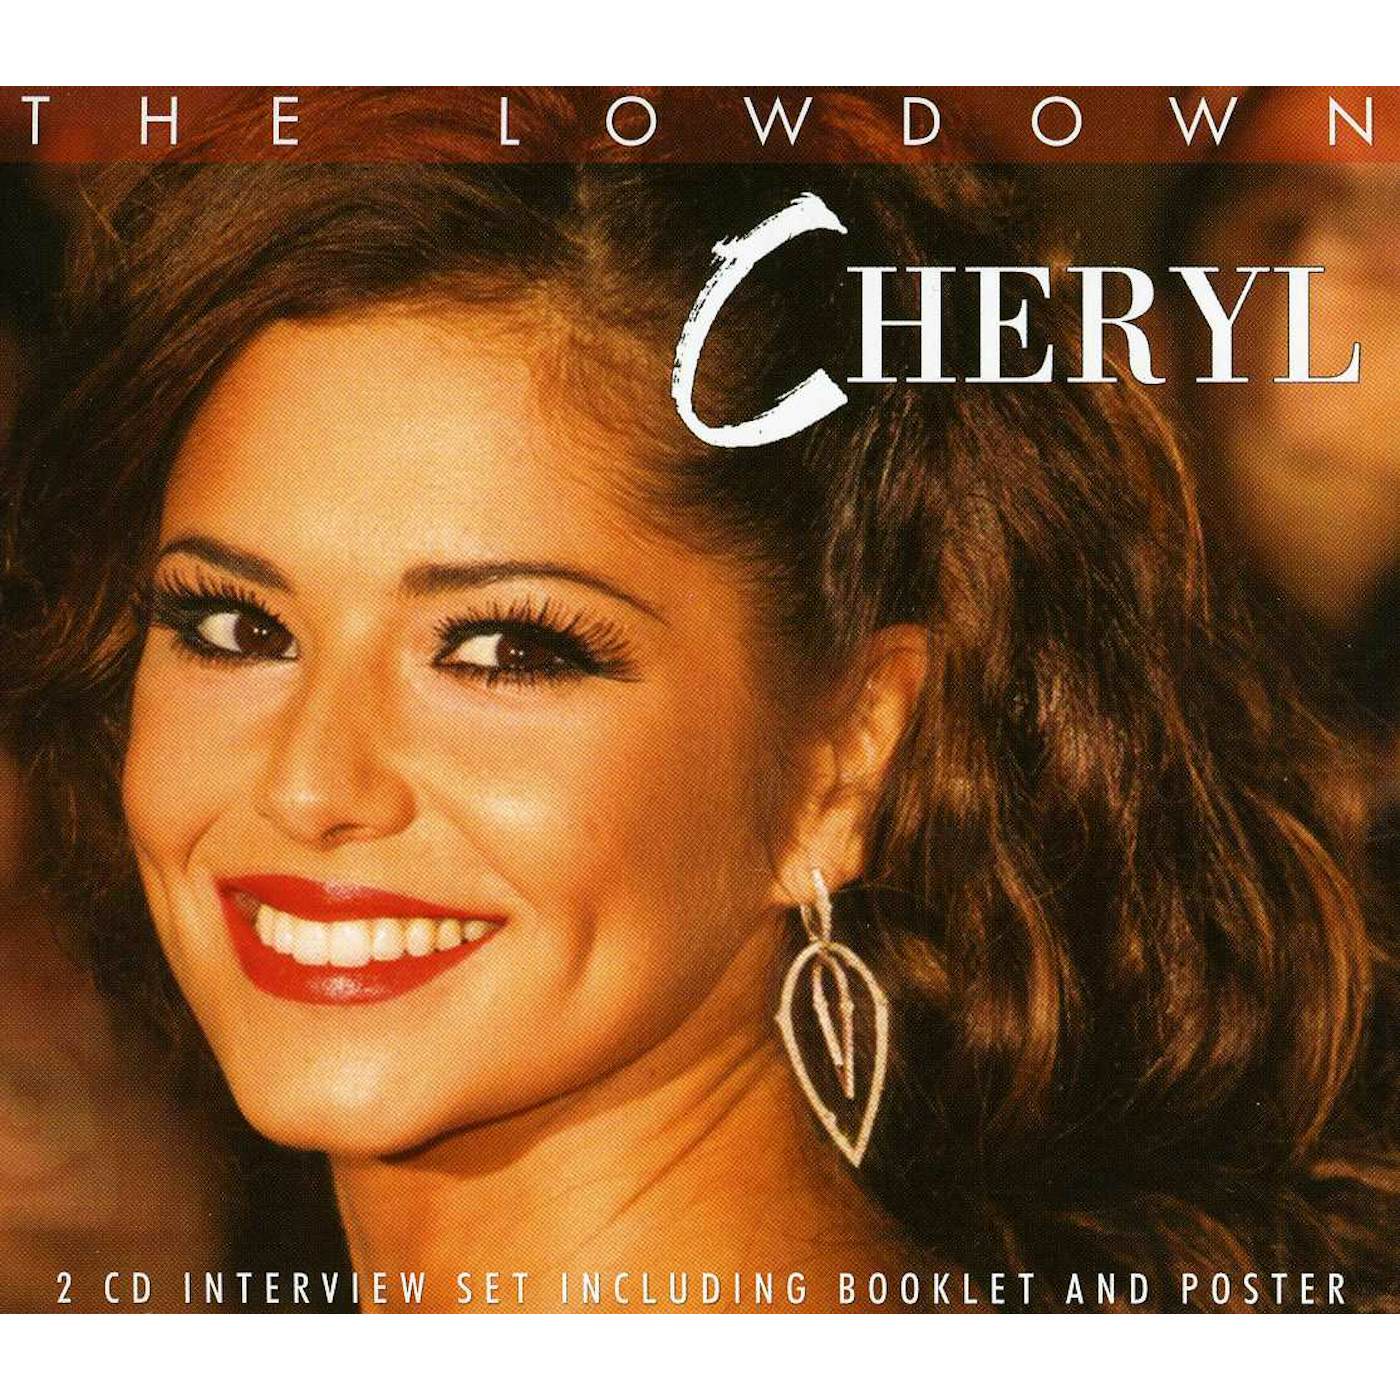 Cheryl LOWDOWN CD